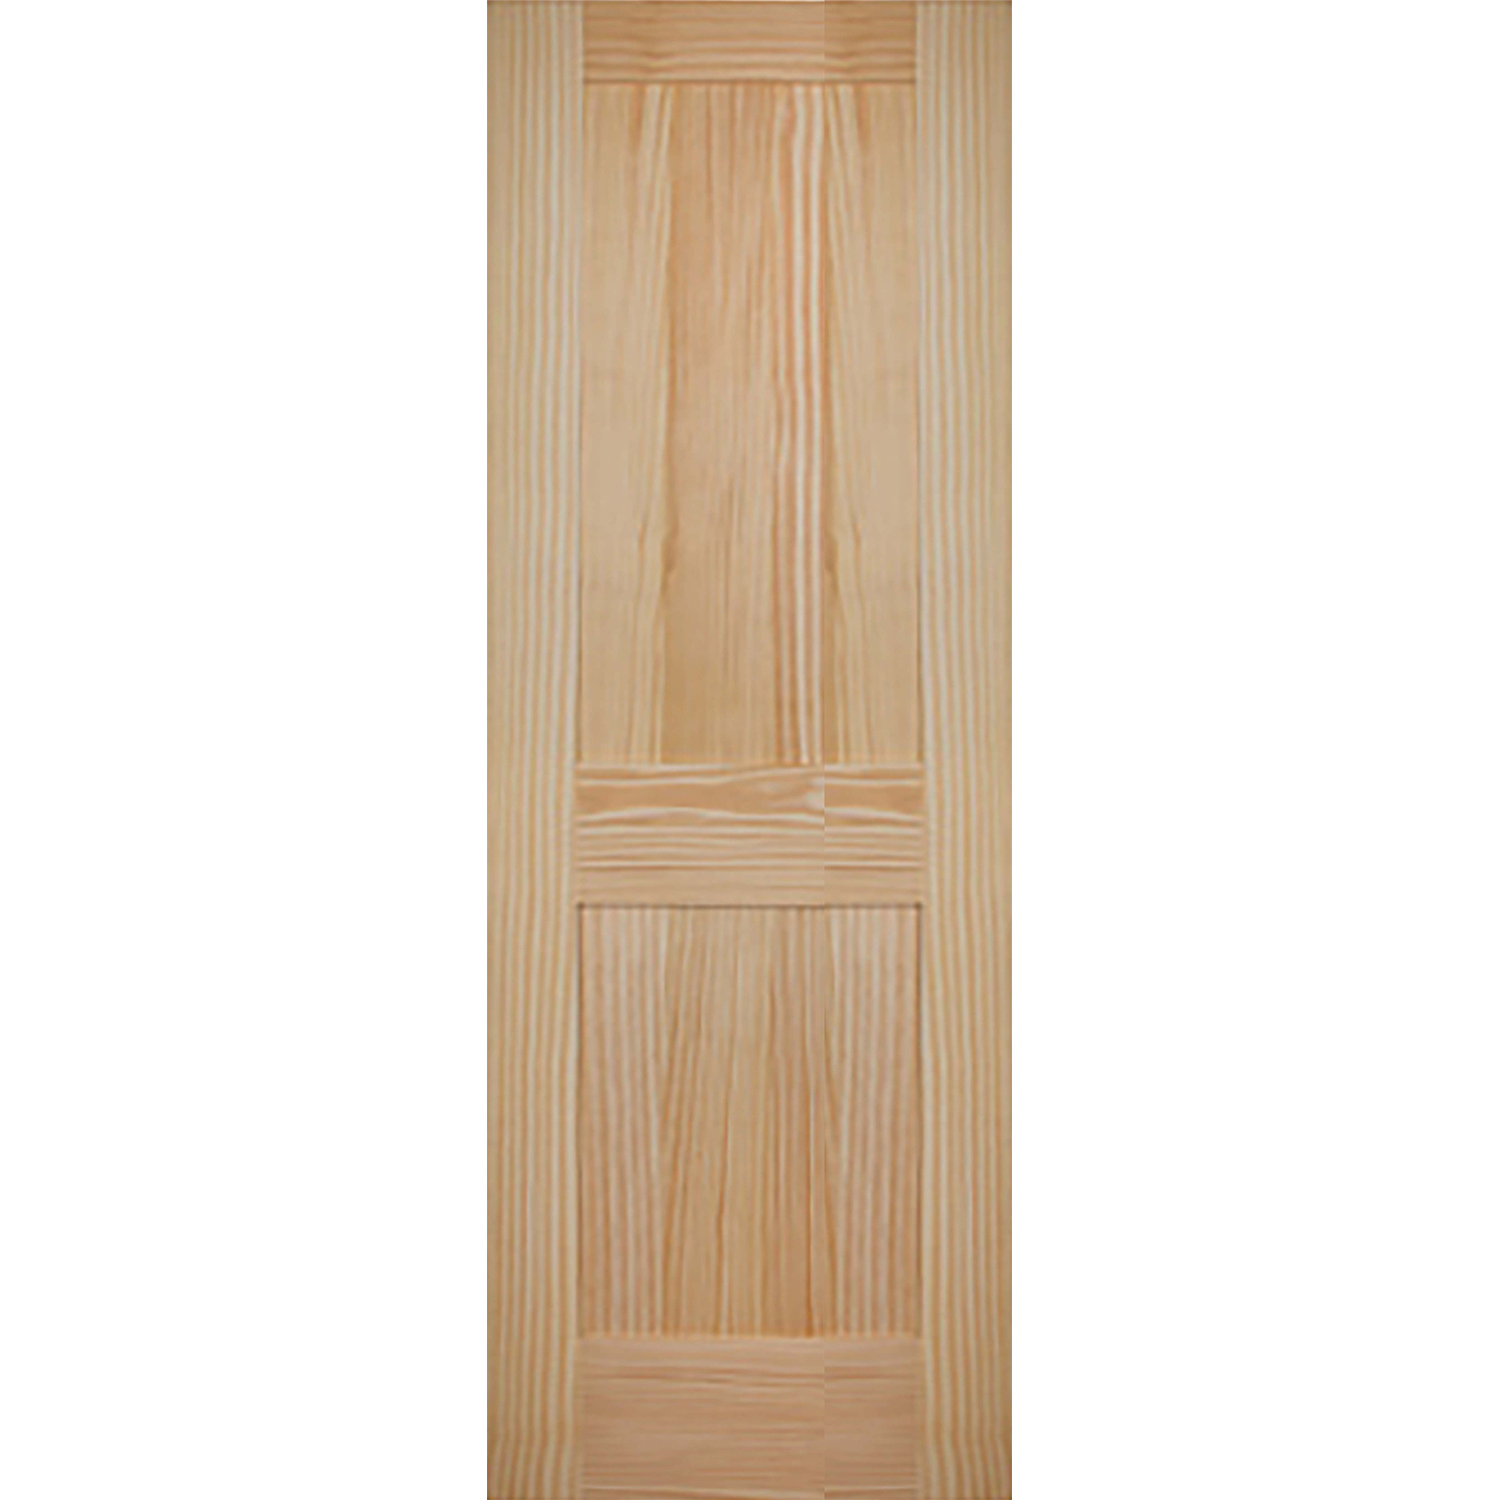 2 Panel 28 x 80 x 1 3/8 - Knotty Pine Door Shaker